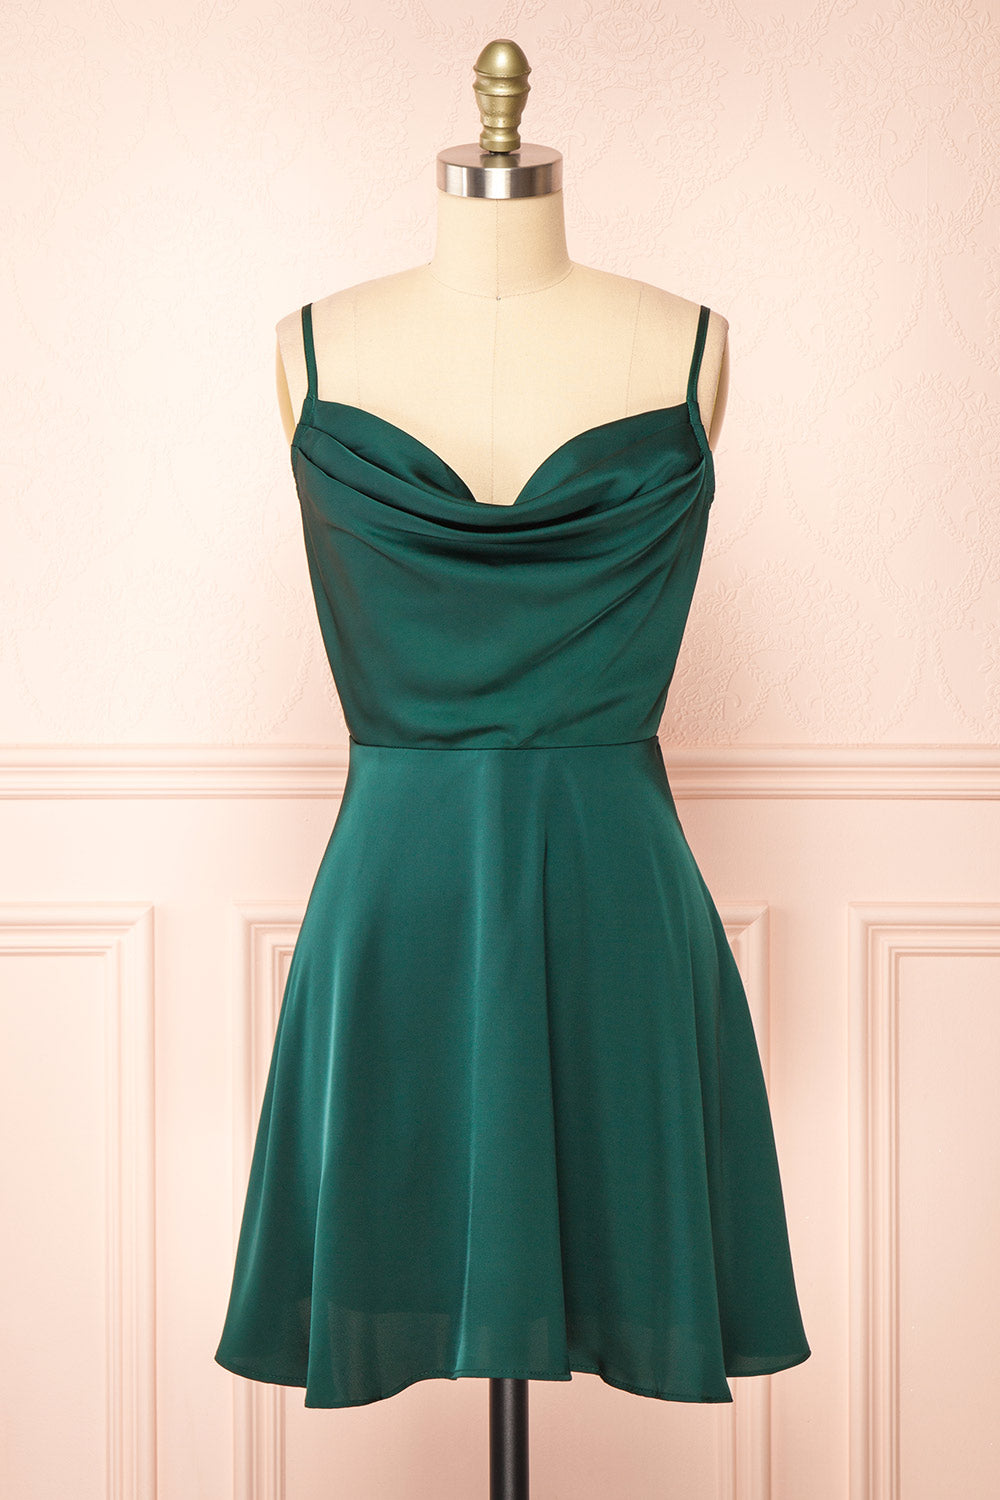 Green Off Shoulder A Line Prom Dresses,Short Satin Cocktail Dresses -  EVERISA